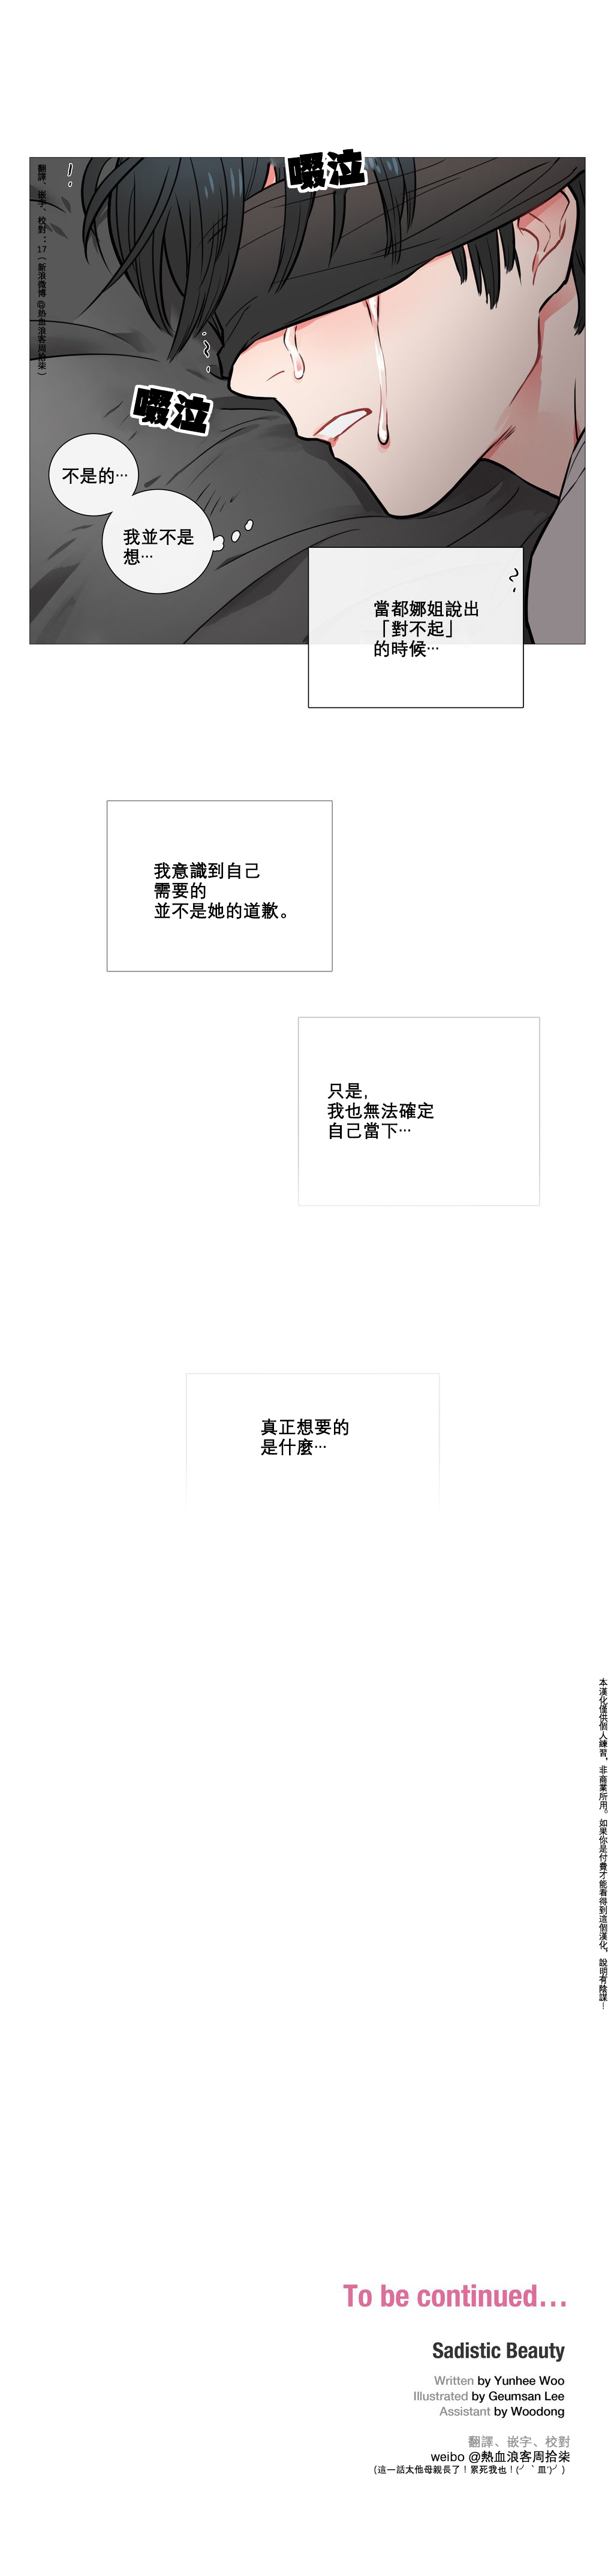 【金山】サディスティックビューティーCh.1-14【中国語】【17汉化】